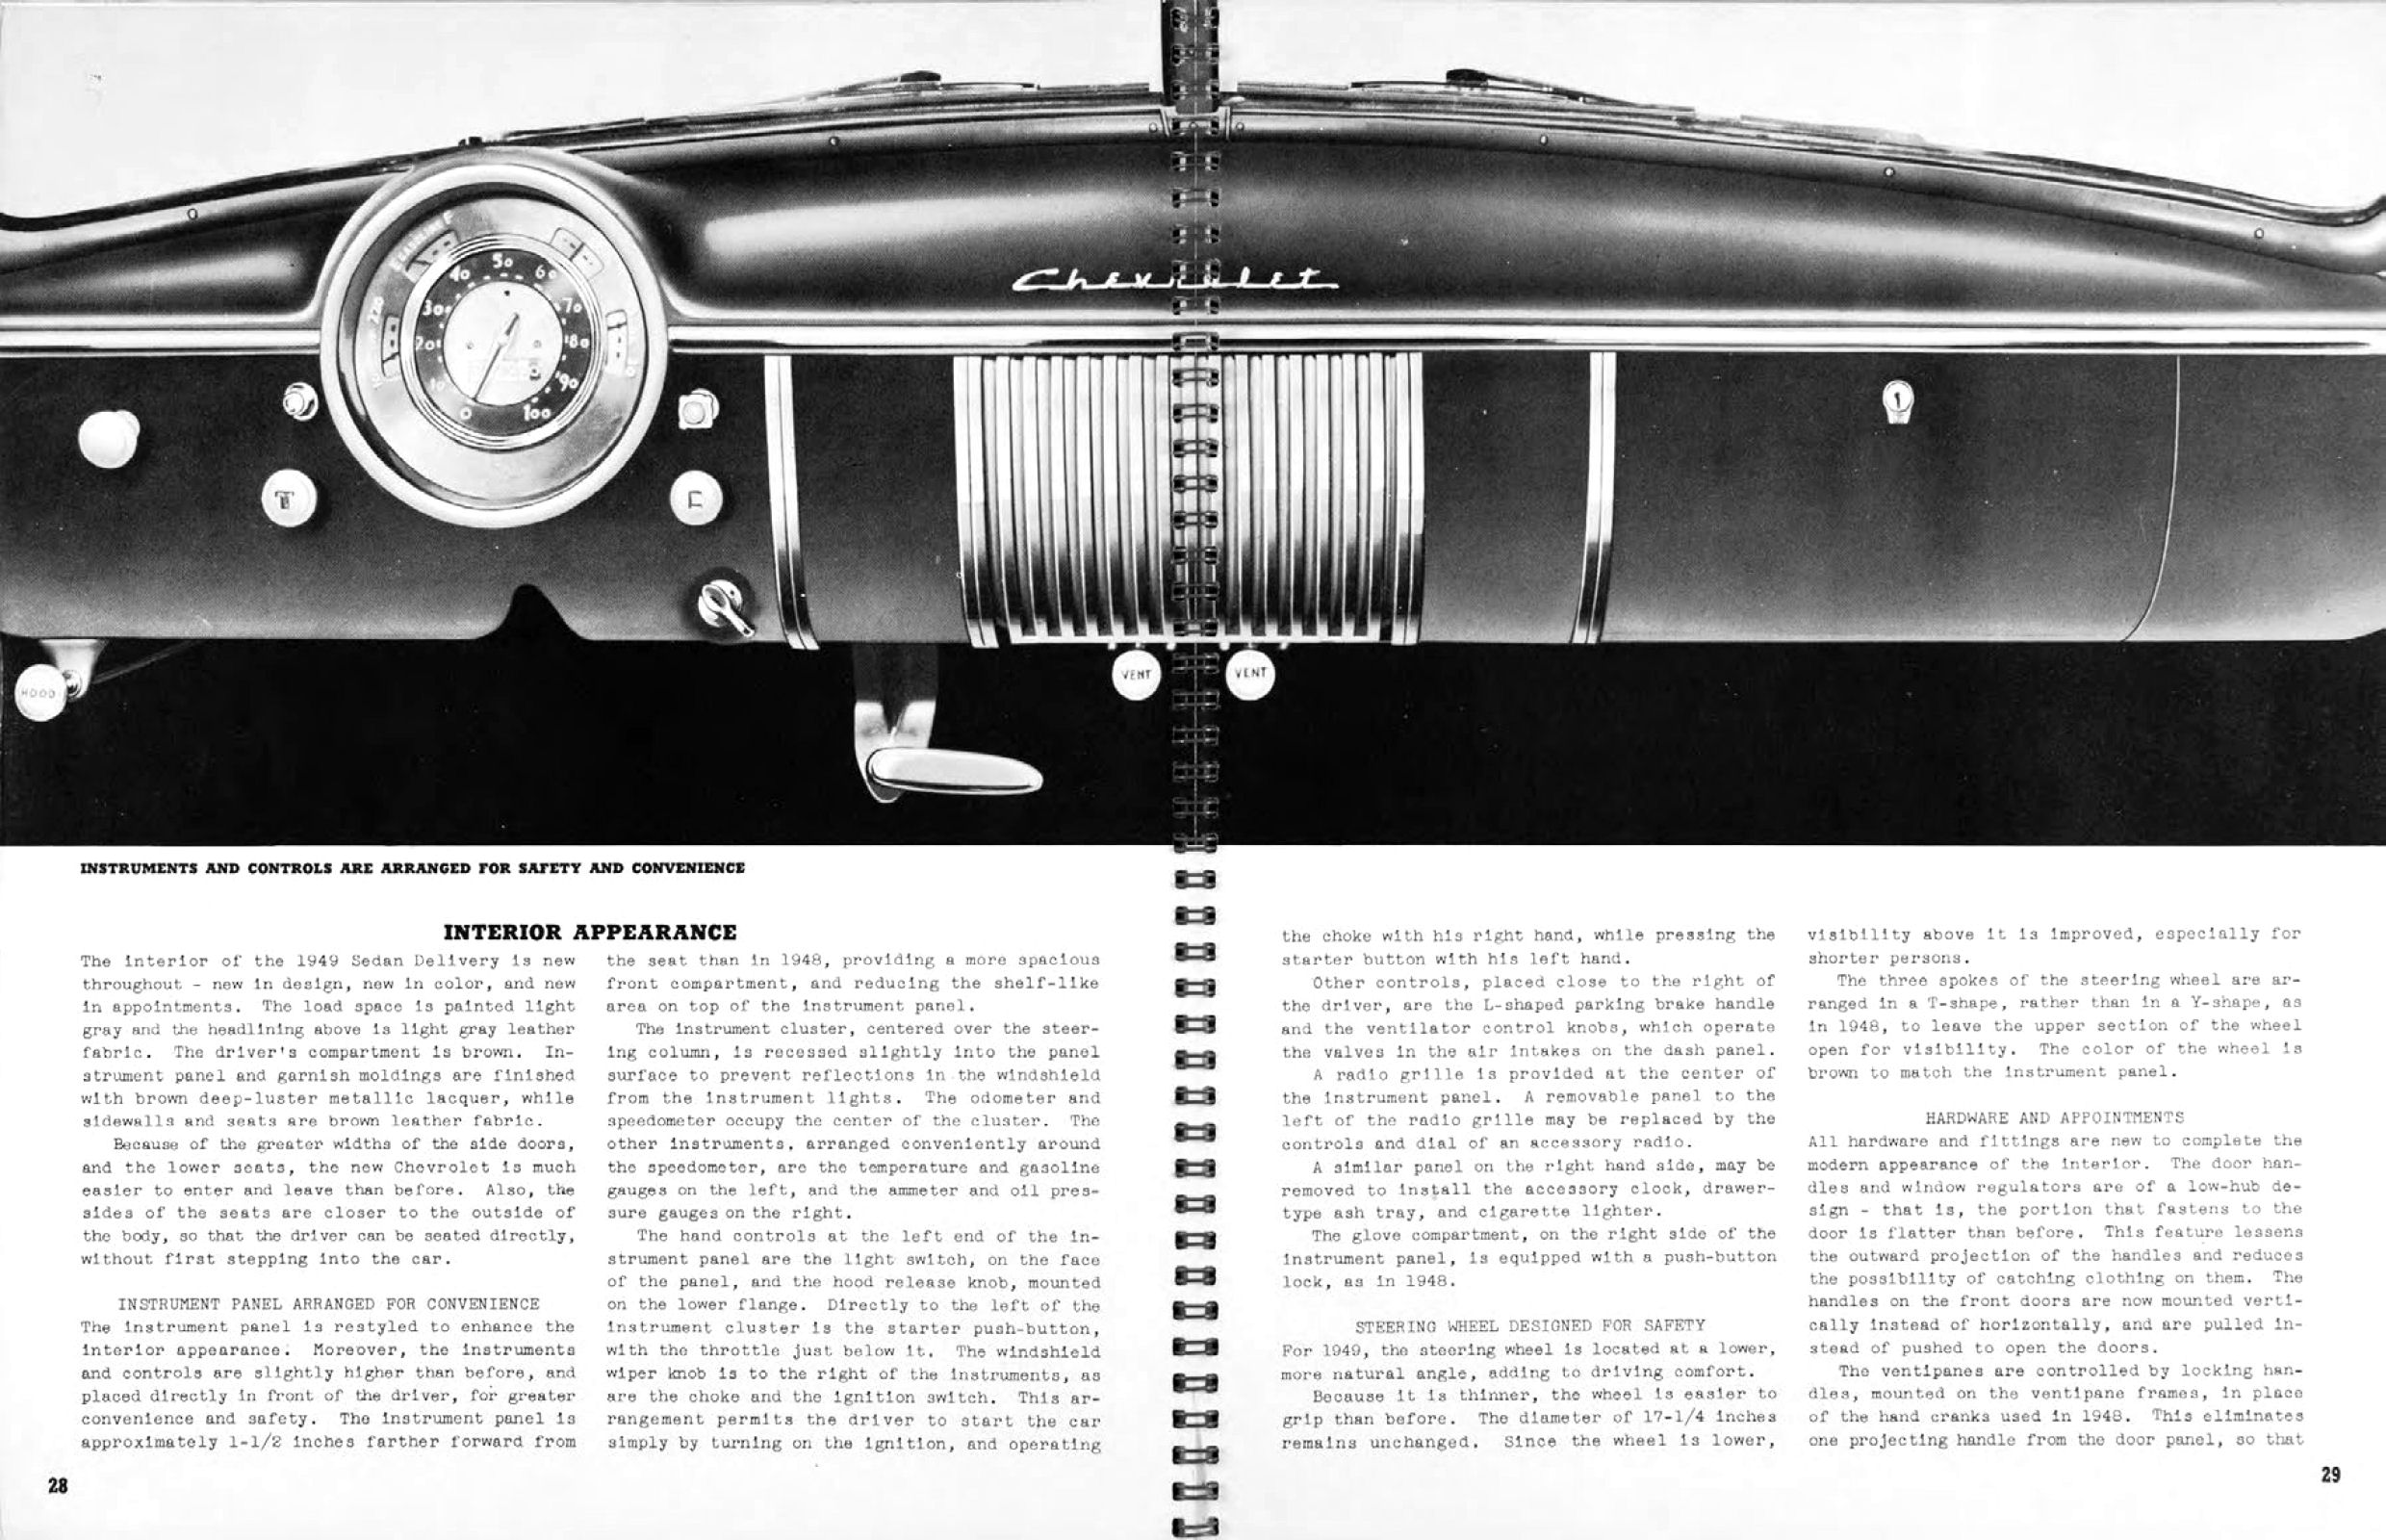 1949 Chevrolet Truck Engineering Features-28-29